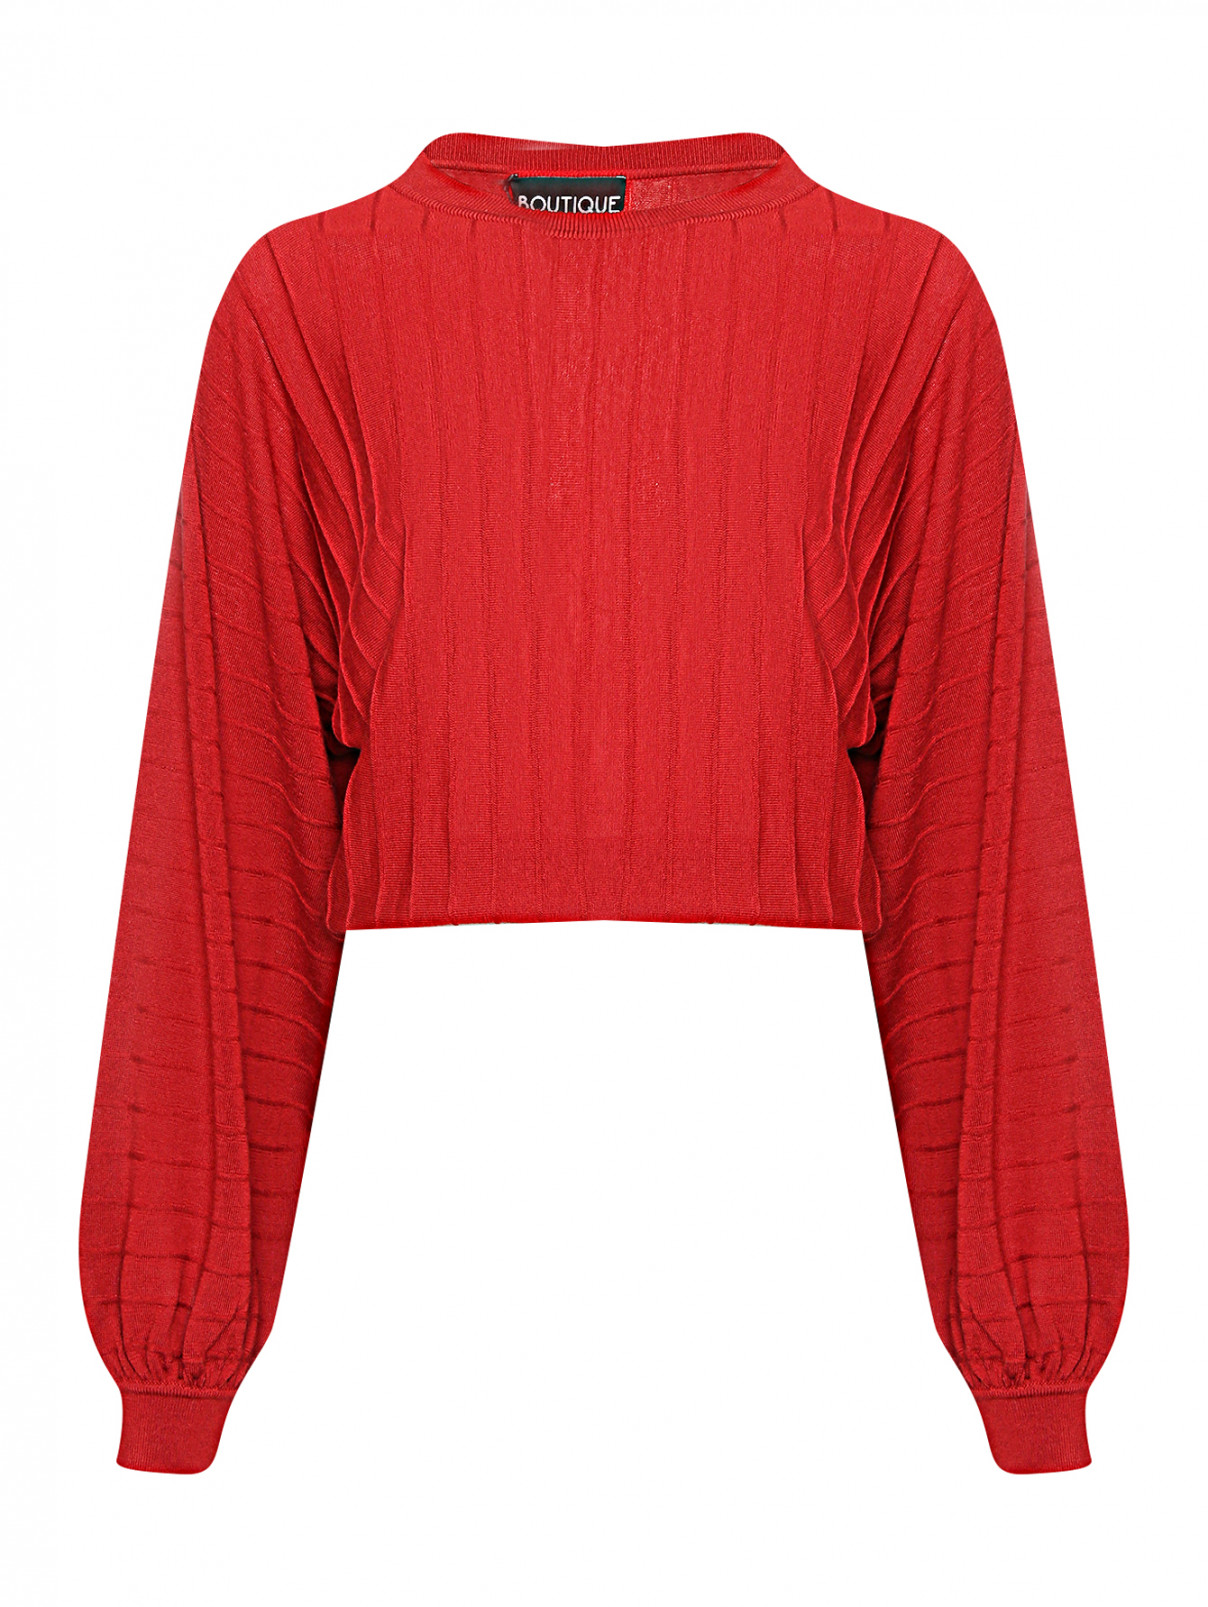 Джемпер из шерсти свободного кроя Moschino Boutique  –  Общий вид  – Цвет:  Красный